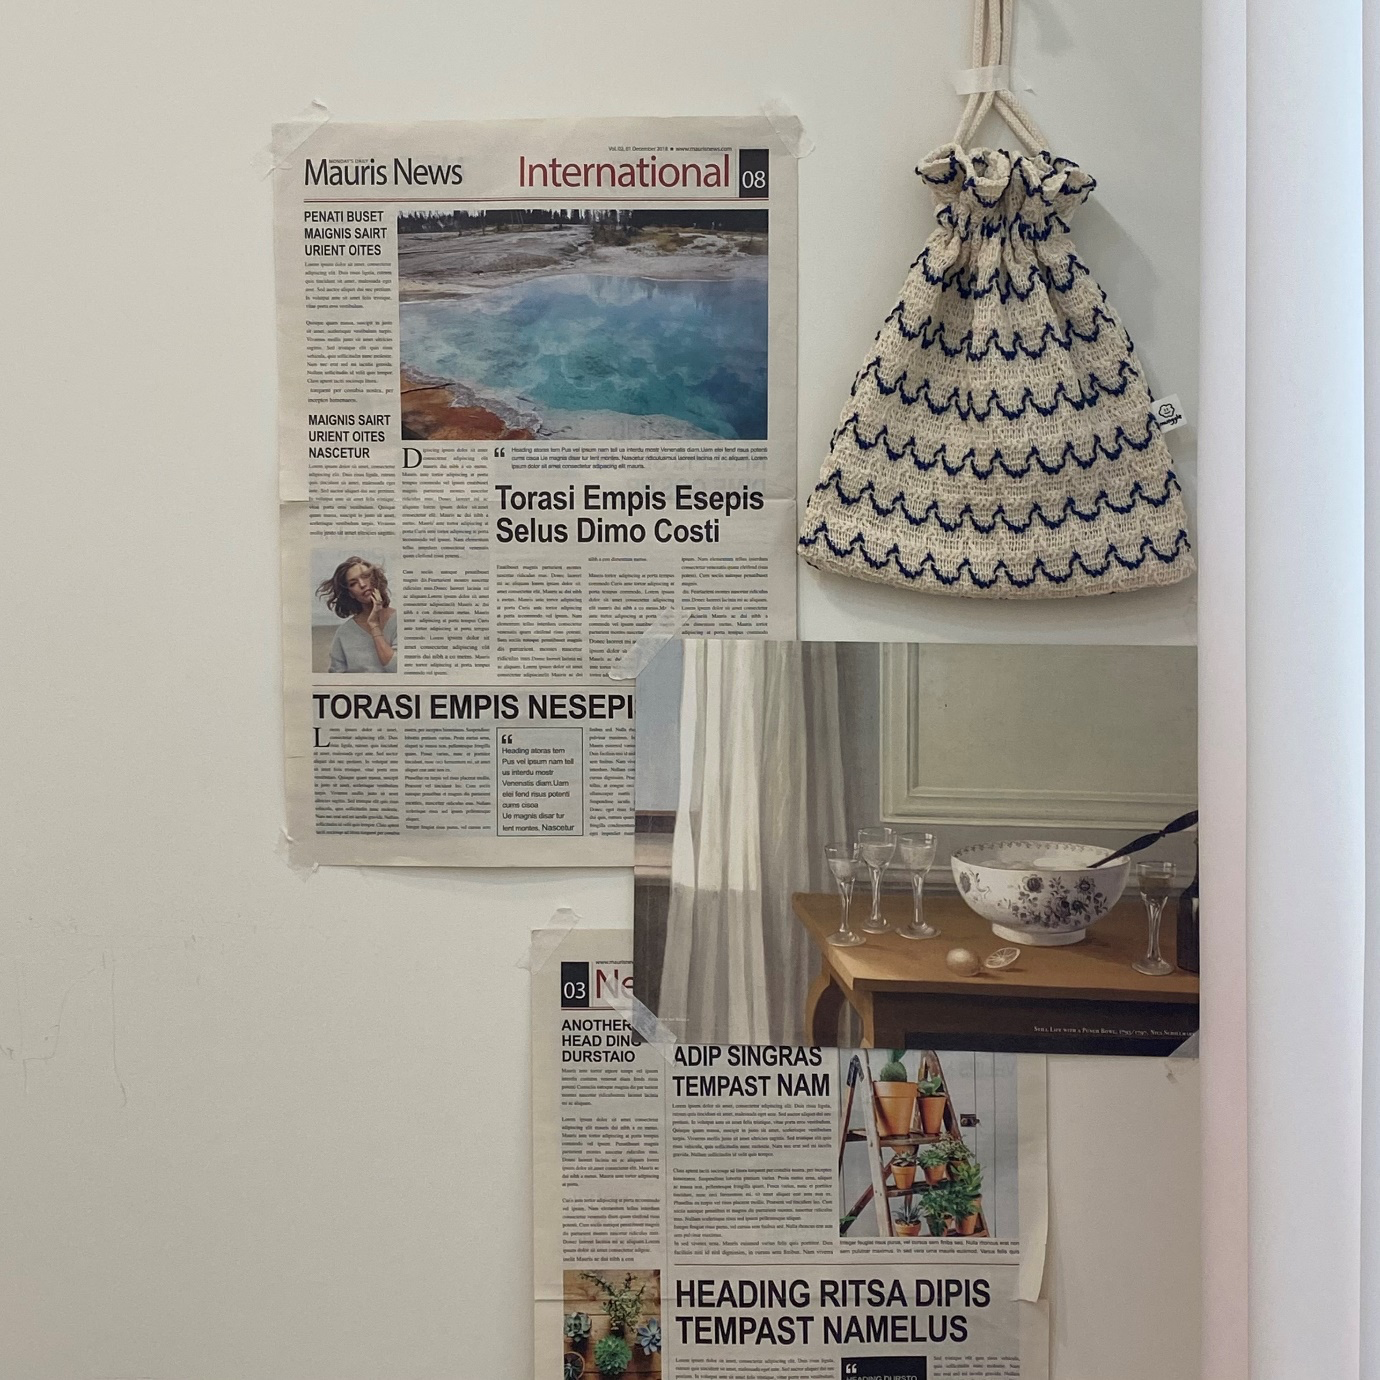 텍스트, 벽, 신문, 실내이(가) 표시된 사진

자동 생성된 설명